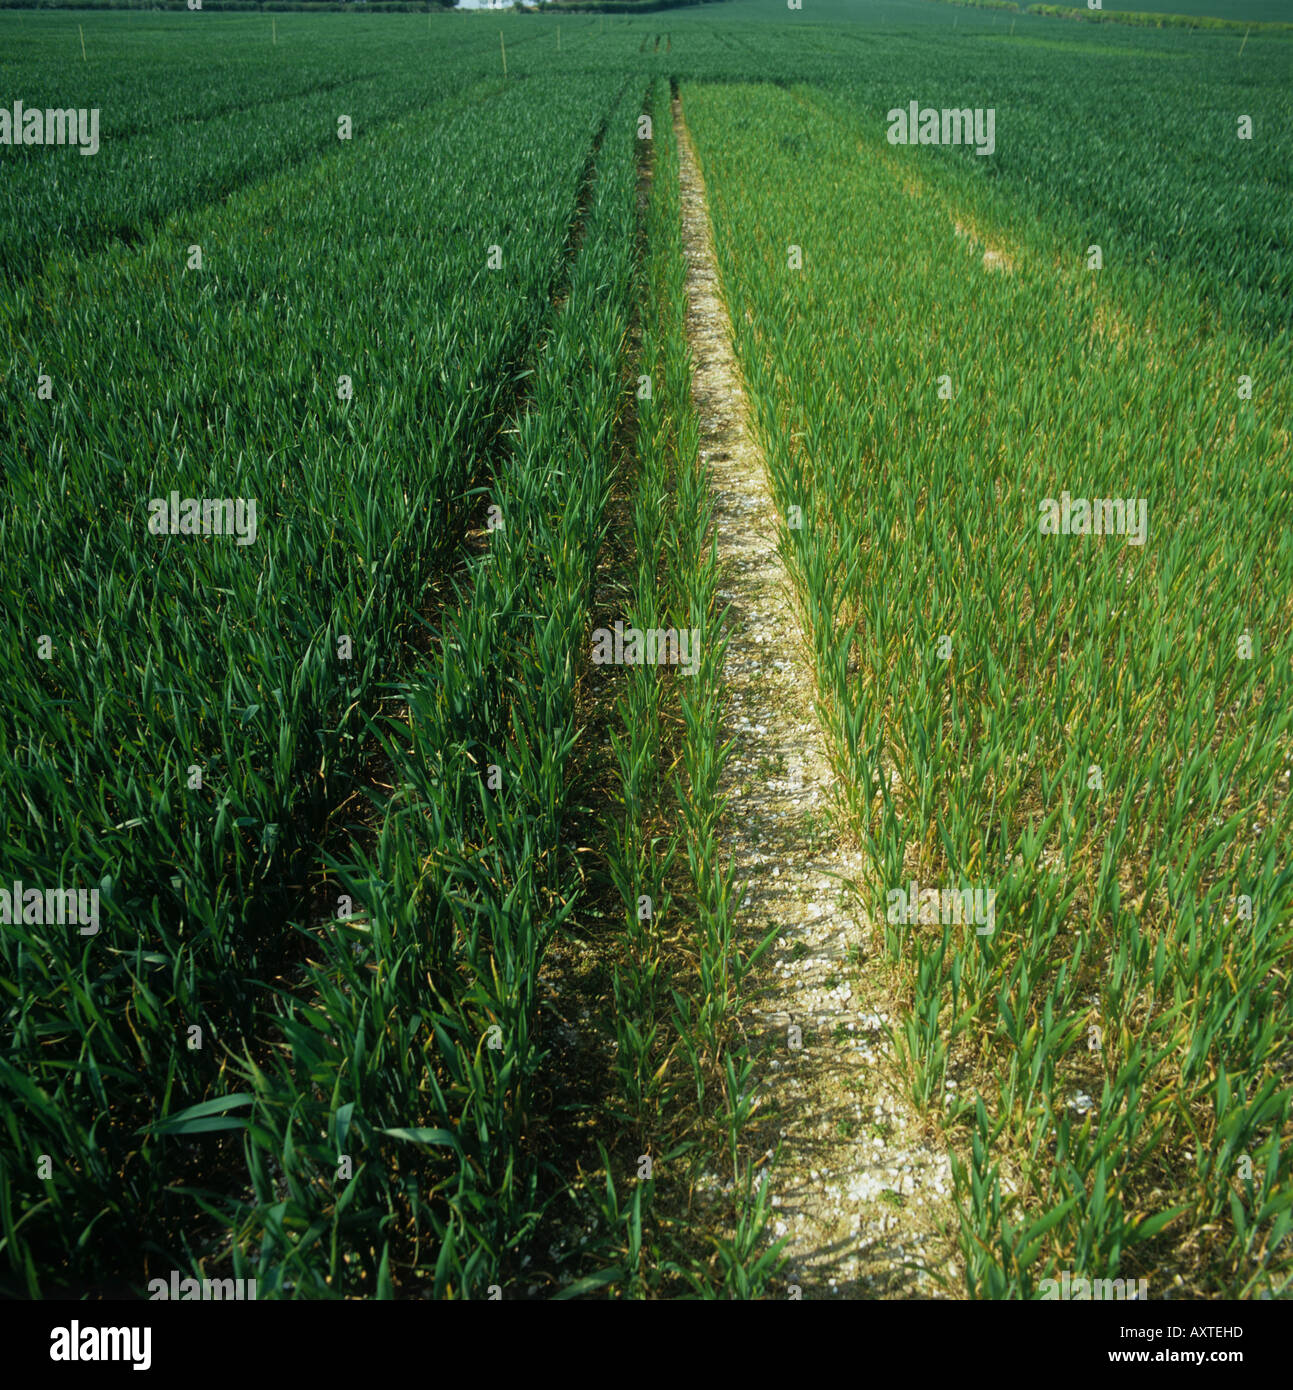 Vergleich der Weizen Ernte Grundstücke, die man normalerweise mit Stickstoffdünger cv unbehandelt behandelt Stockfoto